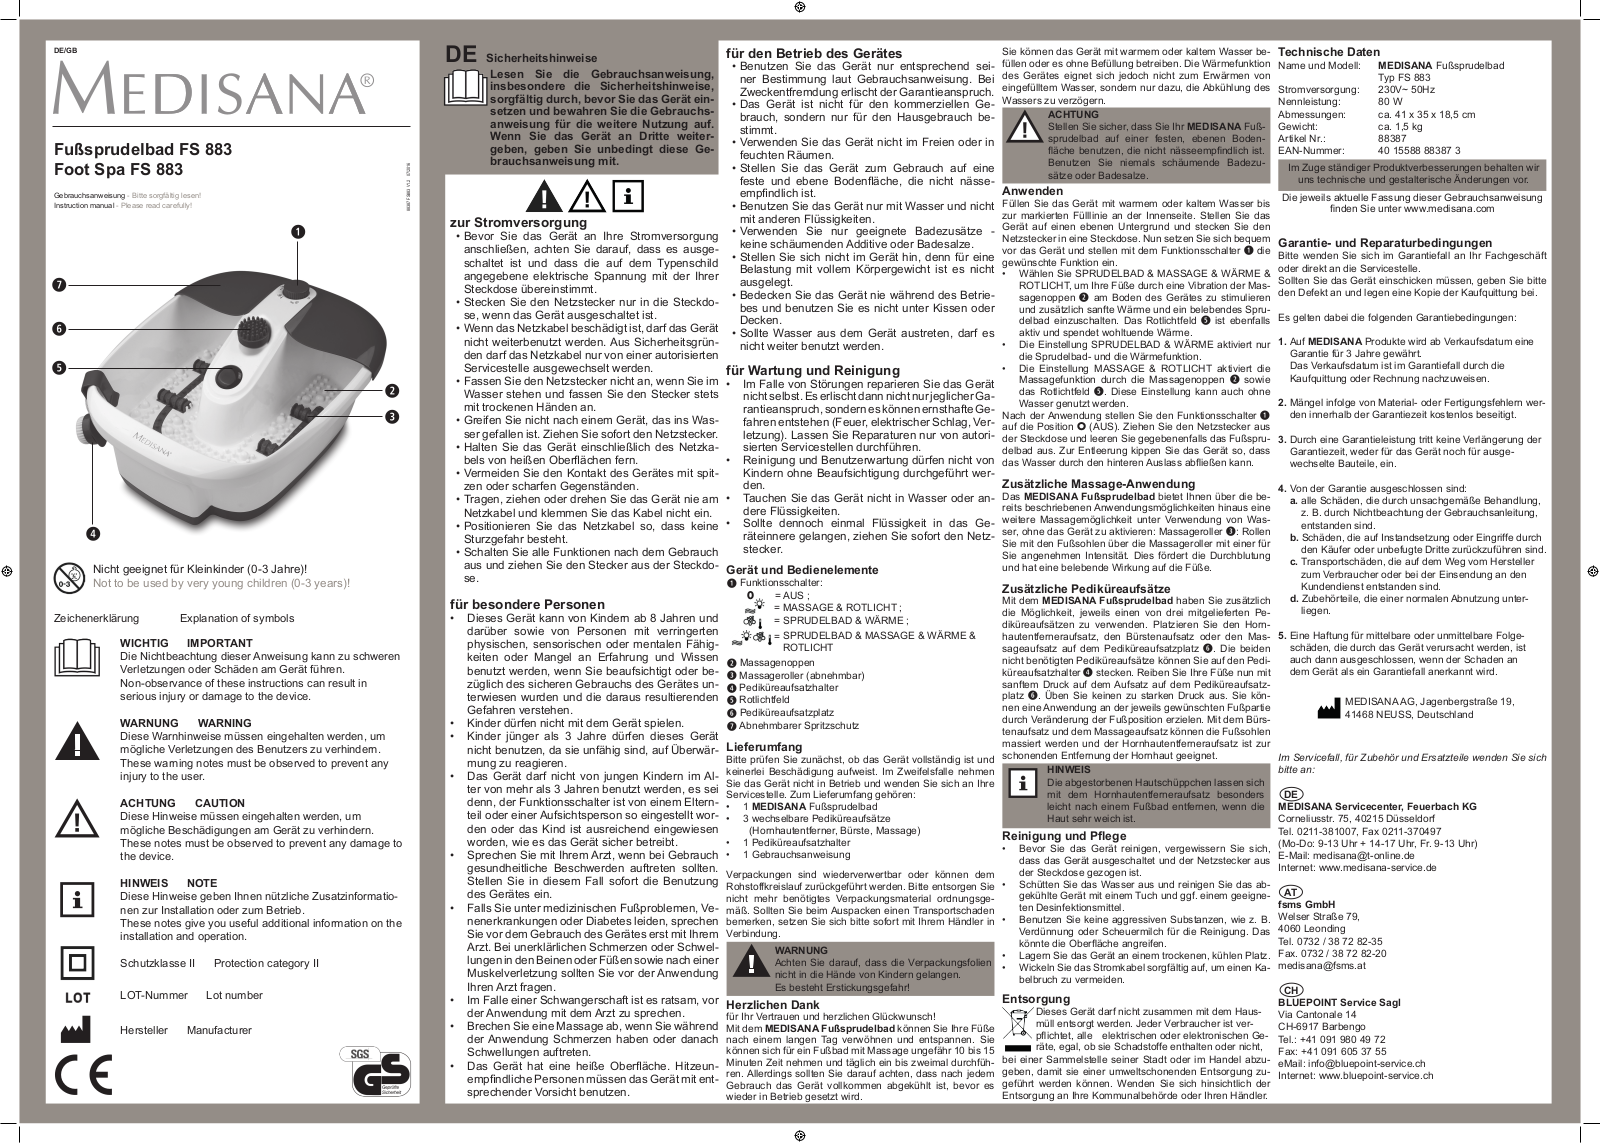 Medisana FS 883 operation manual